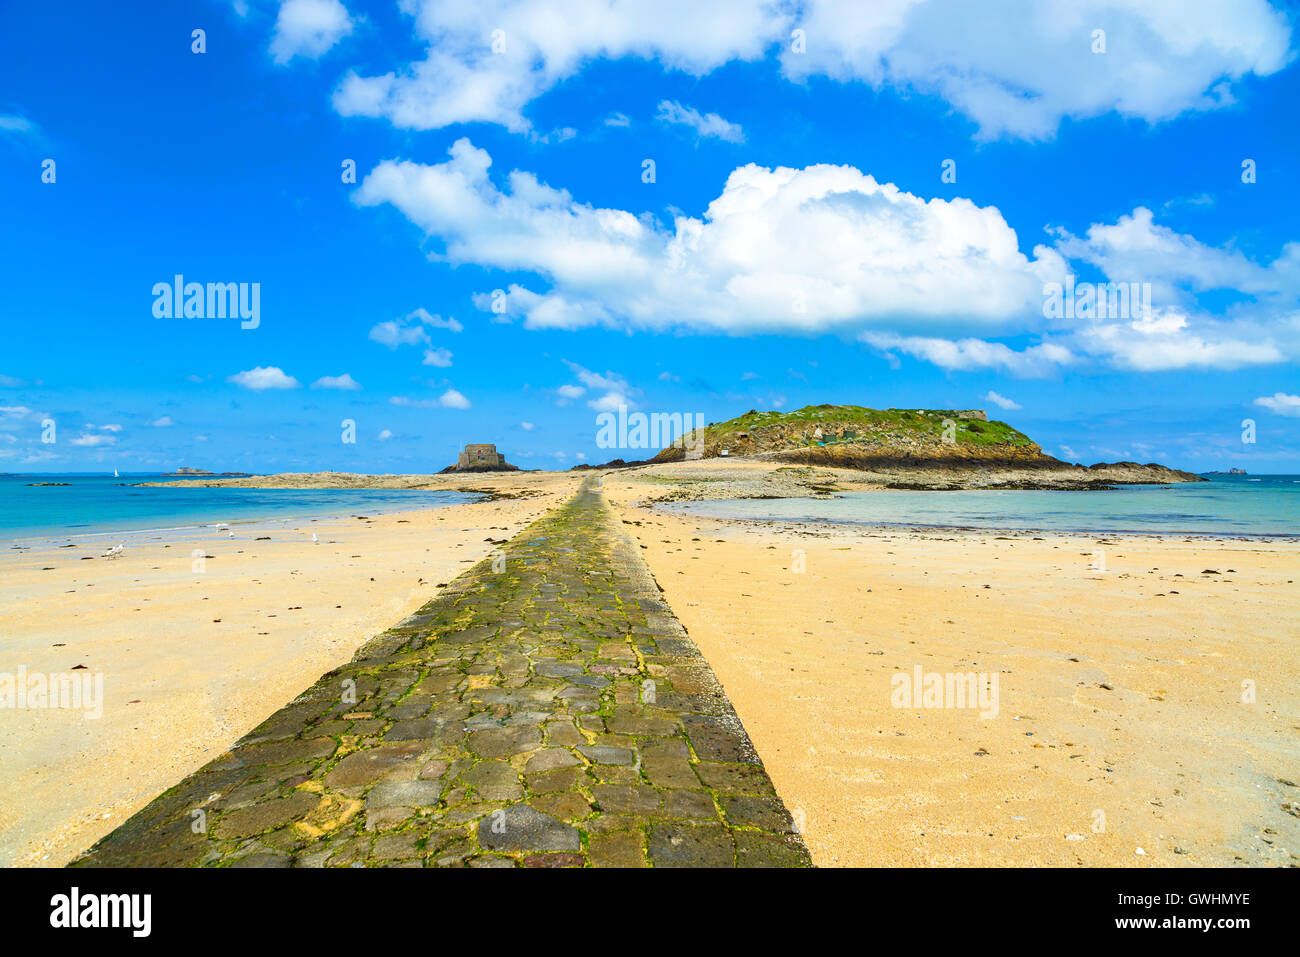 La baie de Saint Malo, de la pierre, Grand et Petit être fort pendant la marée basse. Bretagne, France, Europe. Banque D'Images